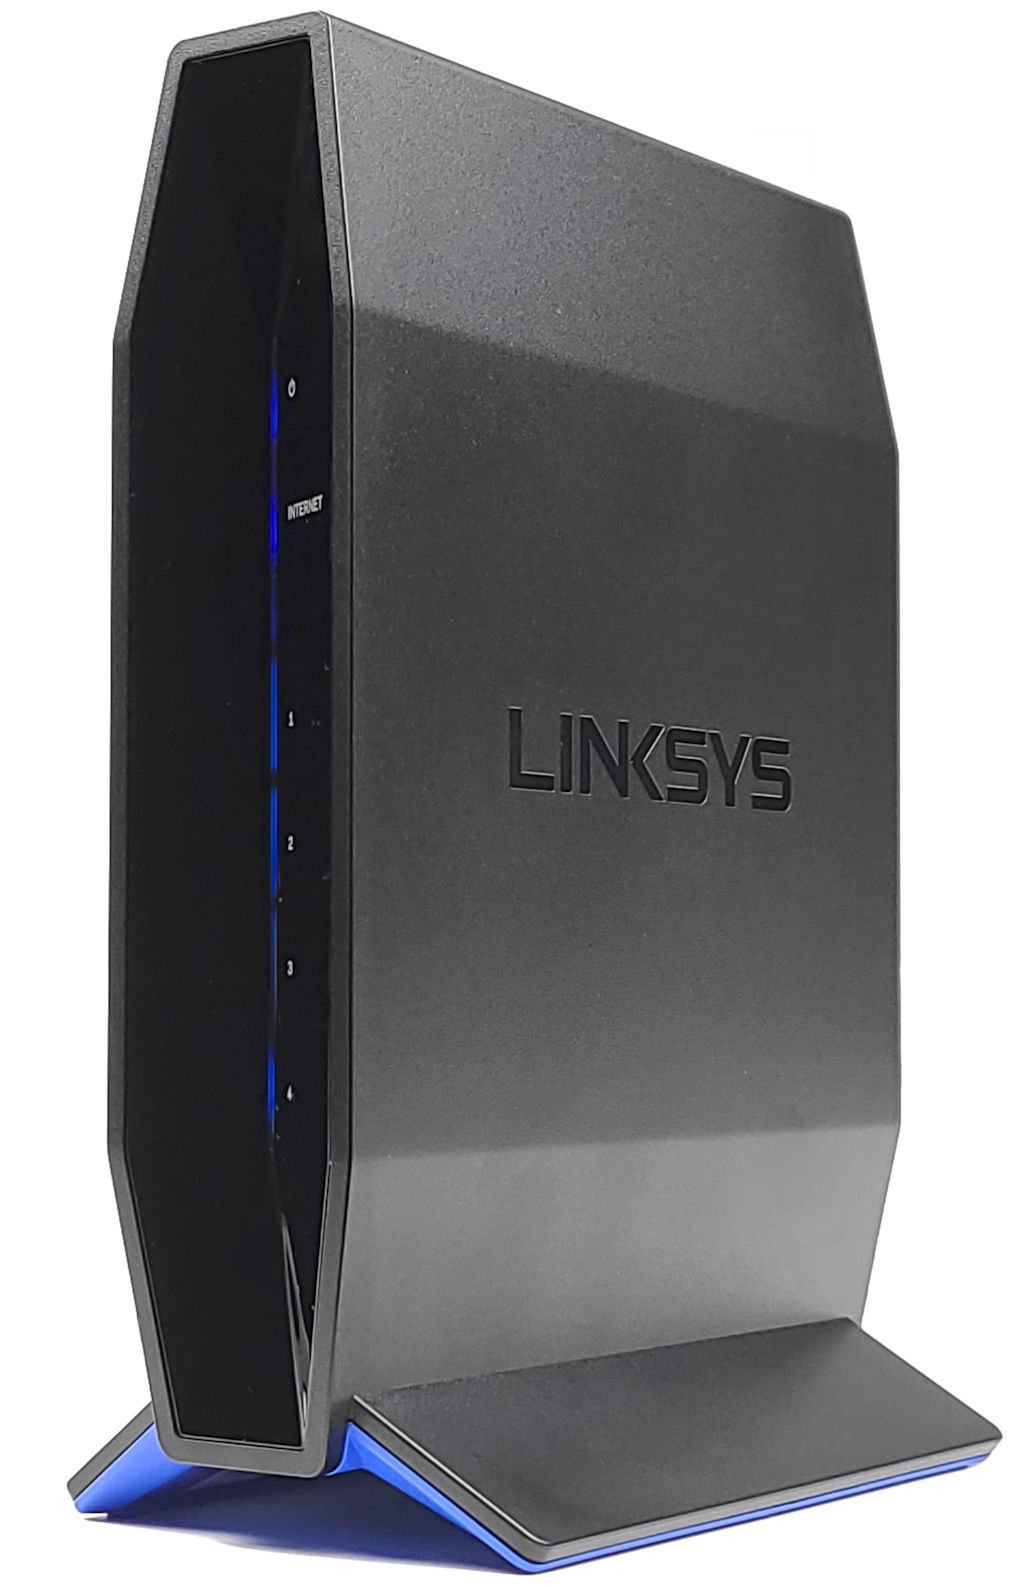 型仔外观、非中国製造 !! LINKSYS E5600 入门级 AC1200 Router 开箱评测